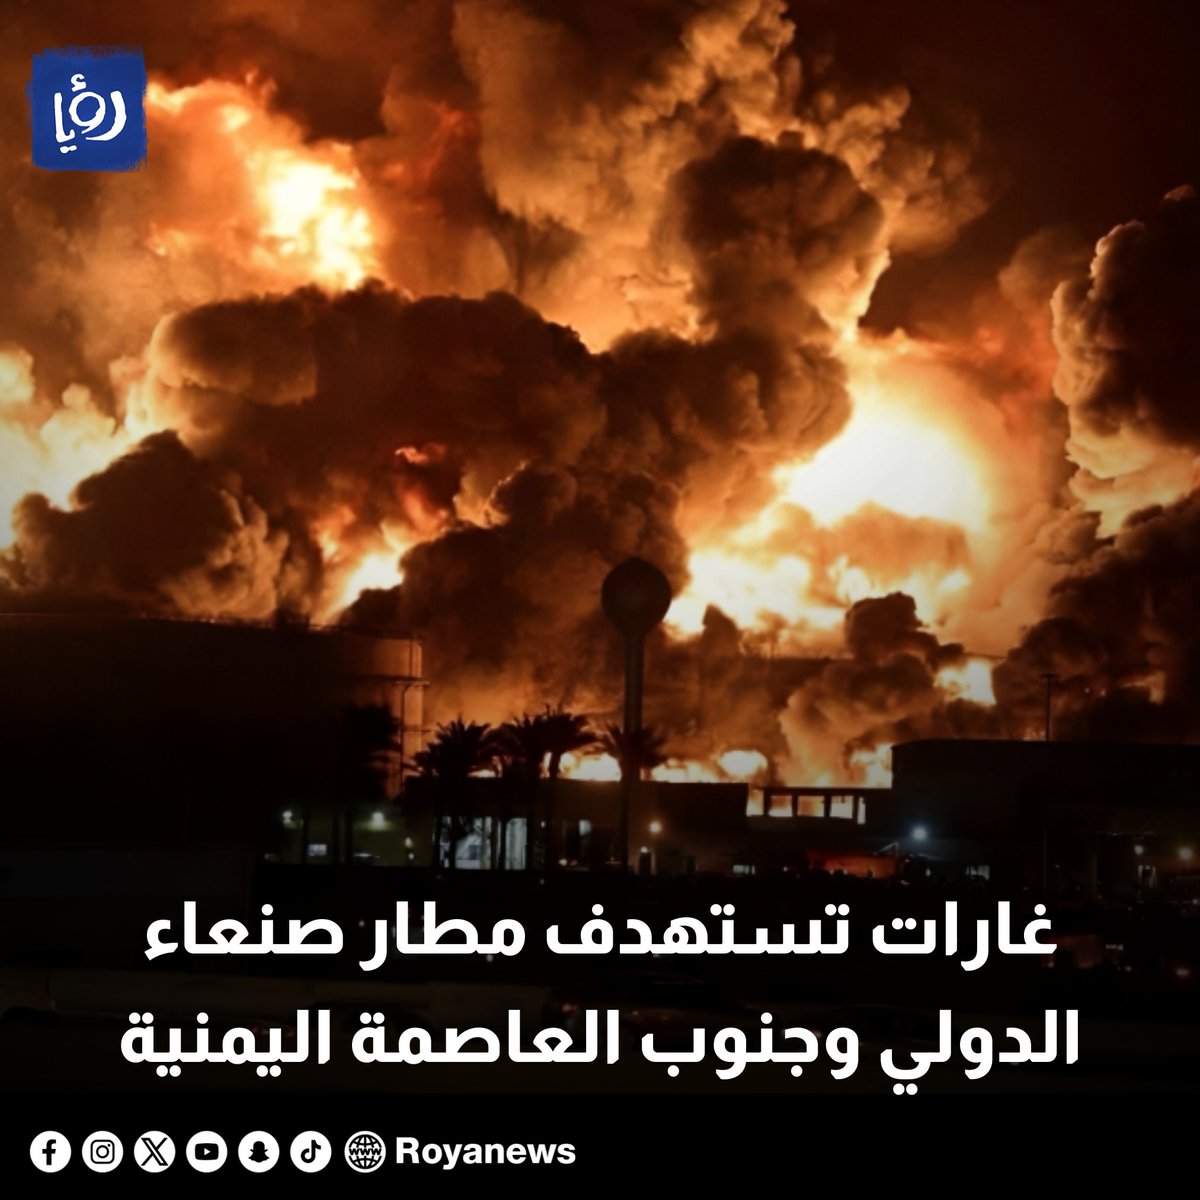 غارات تستهدف مطار صنعاء الدولي وجنوب العاصمة اليمنية royanews.tv/news/327664 #رؤيا_الإخباري #اليمن #صنعاء #عاجل